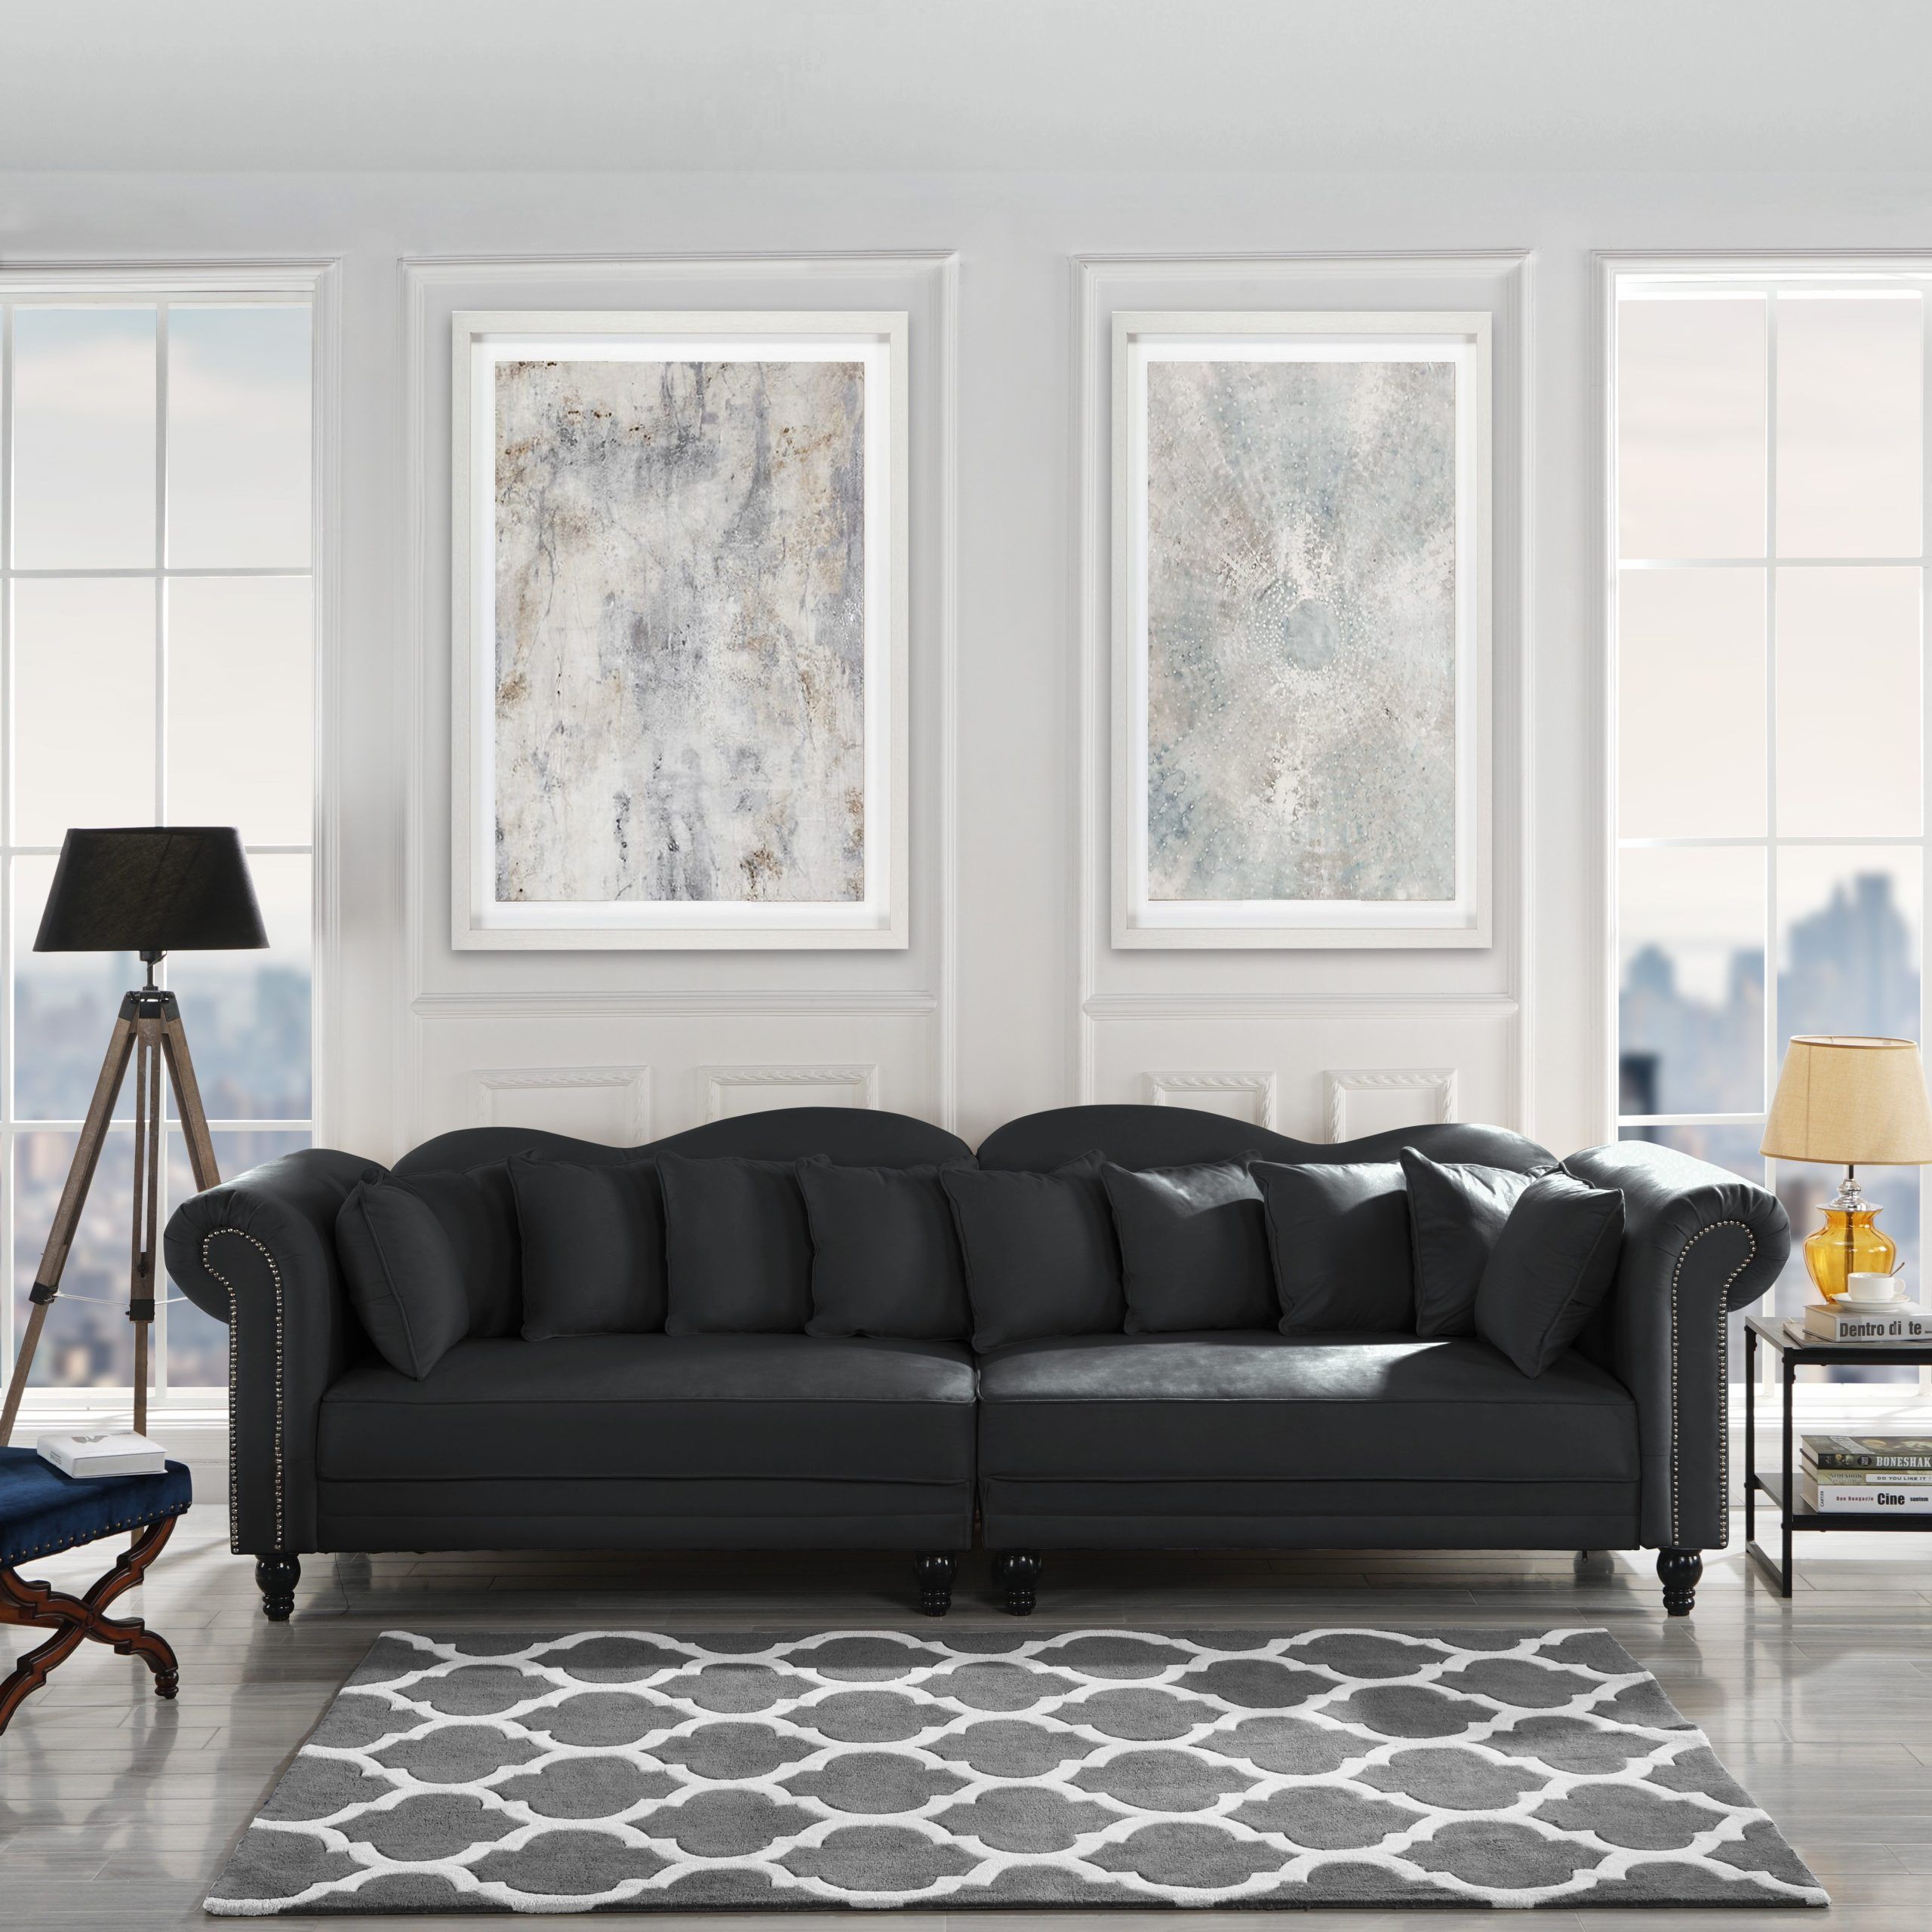 Phenomenal Ideas Of Black Velvet Sofa Living Room Background – Livinghome Inside Black Velvet Sofas (Gallery 11 of 20)